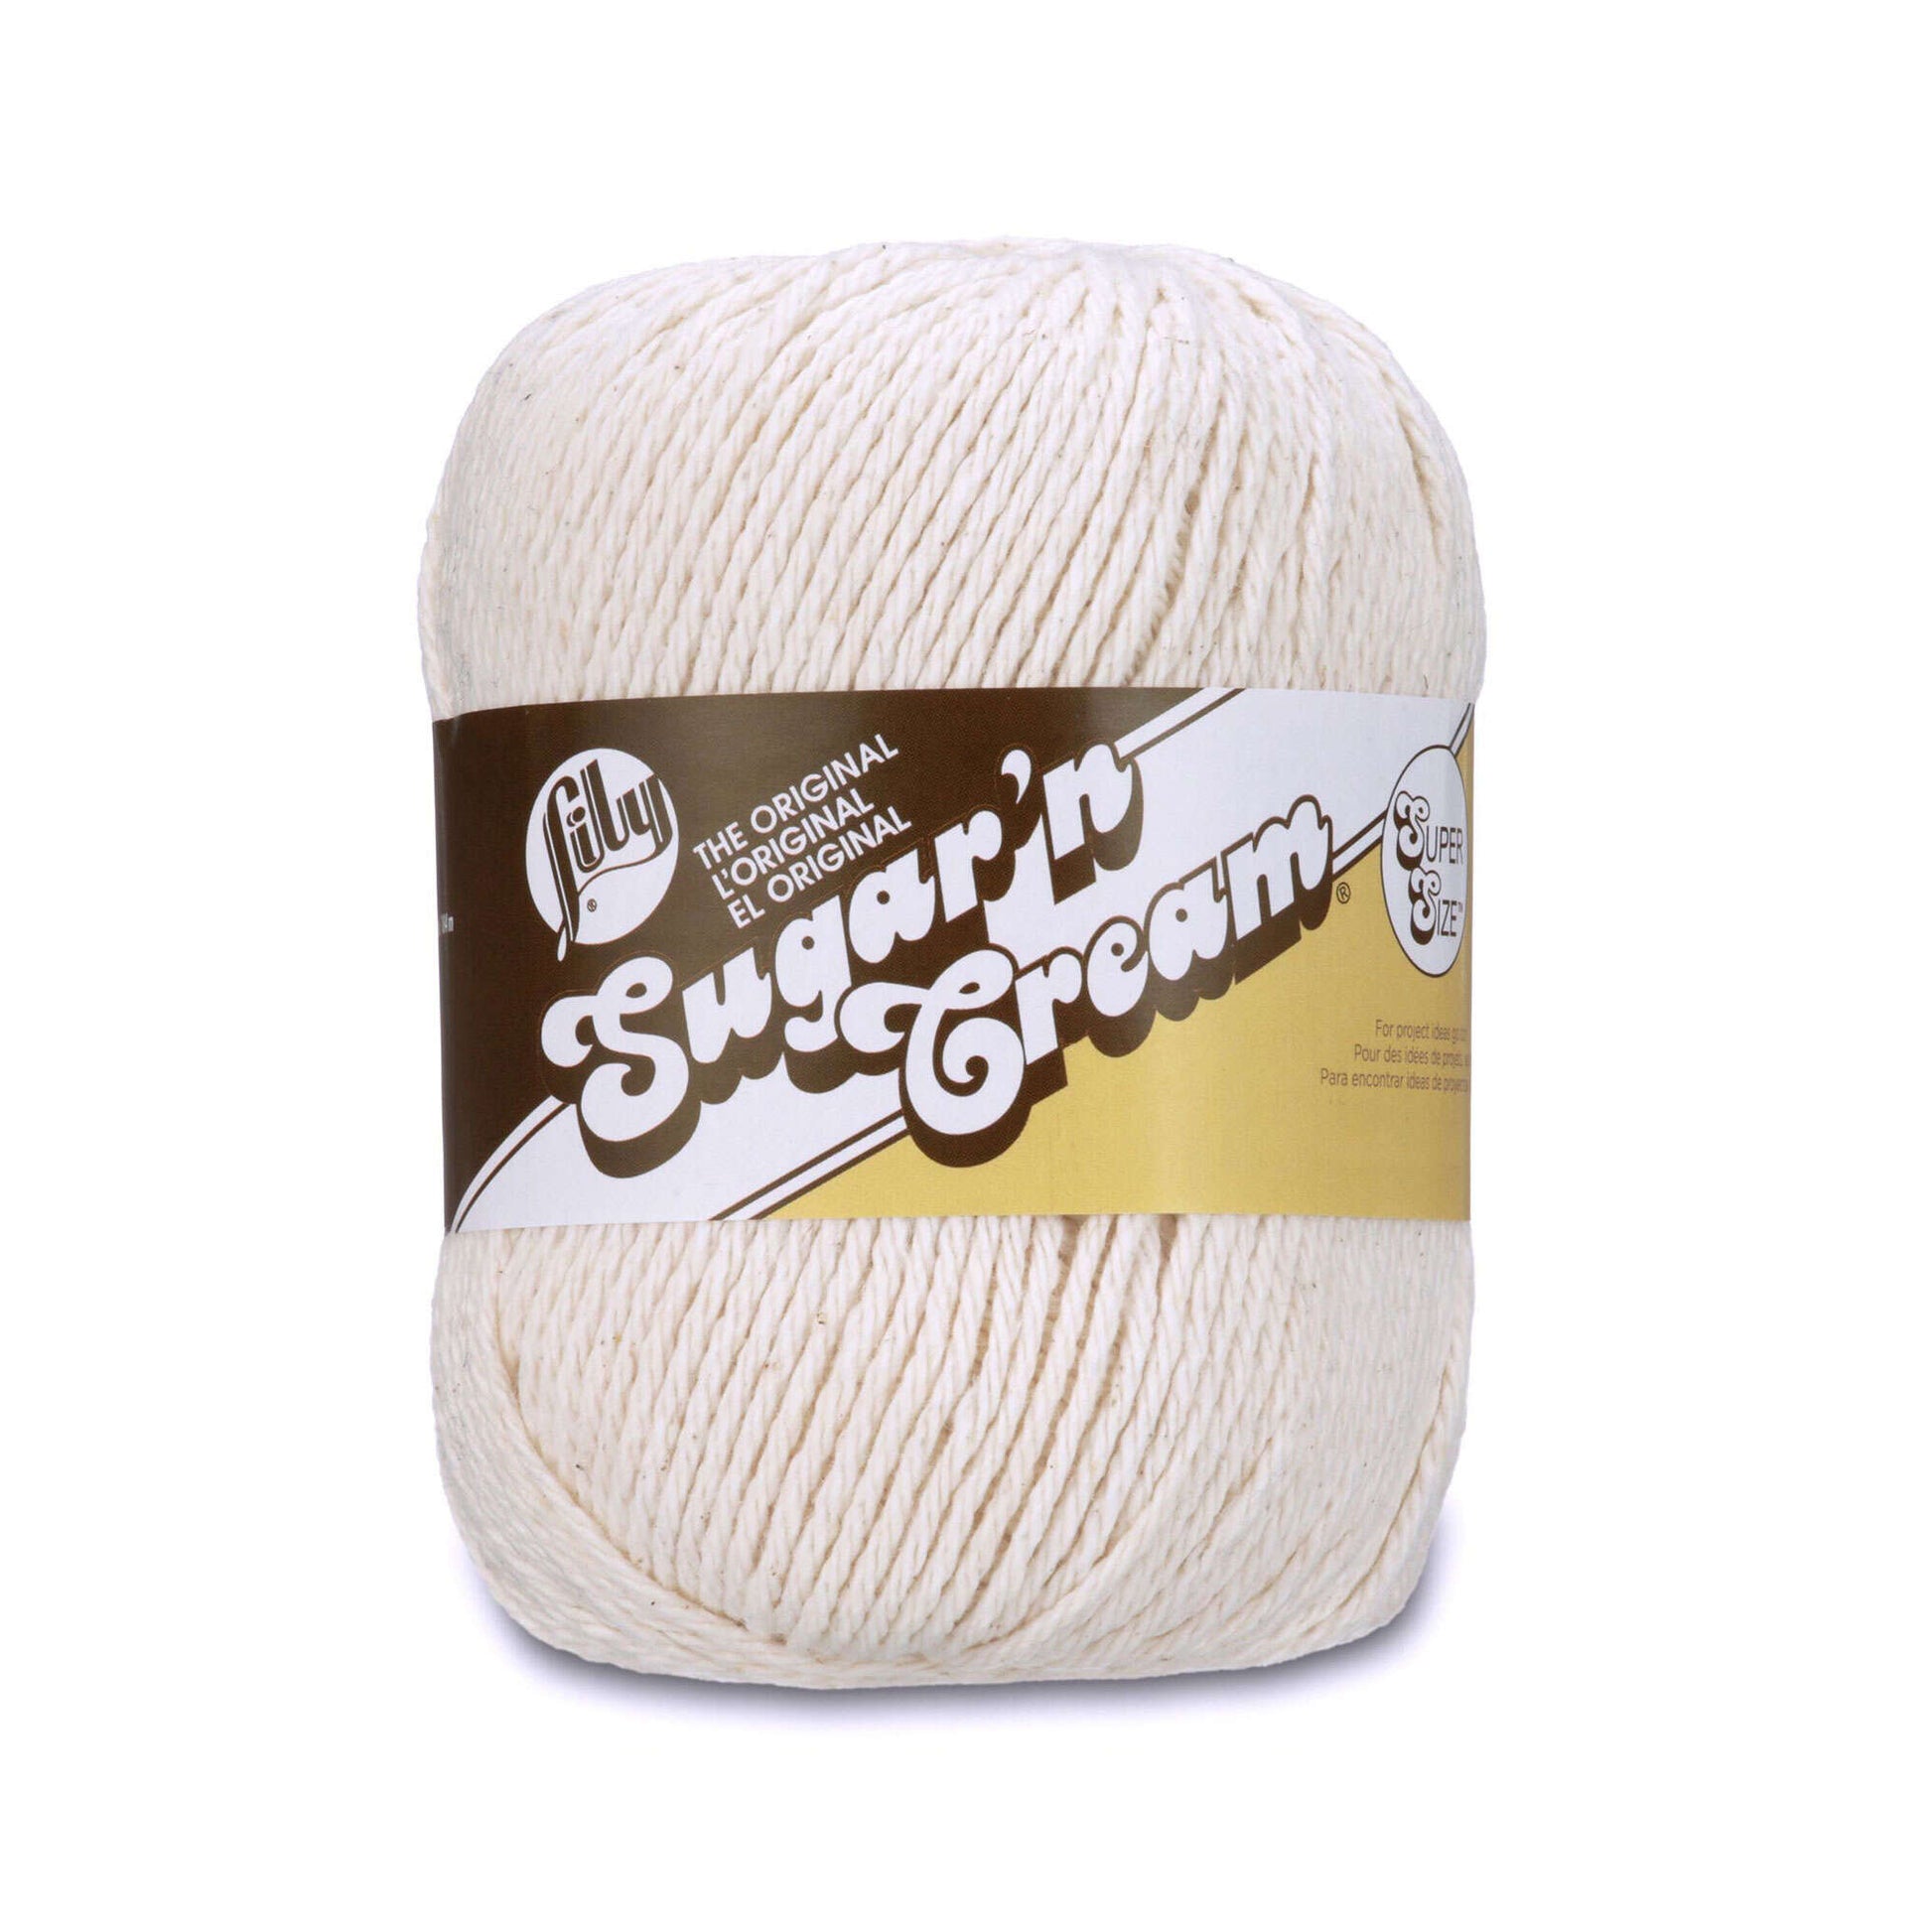 Lily Sugar'N Cream Super Size Warm Brown Yarn - 6 Pack of 113g/4oz